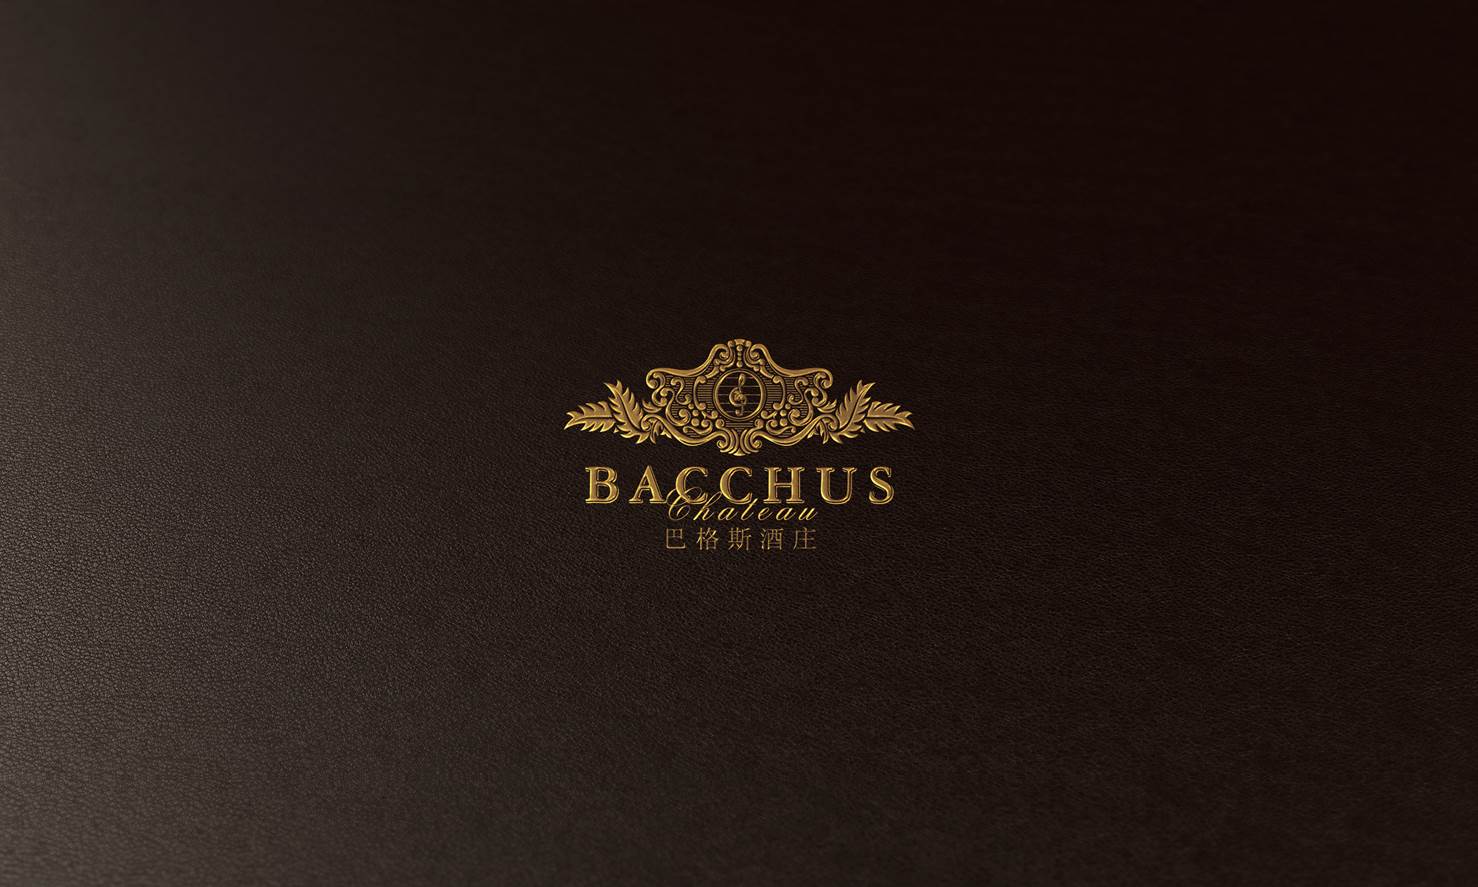 古一设计,巴格斯酒庄,品牌设计,包装设计